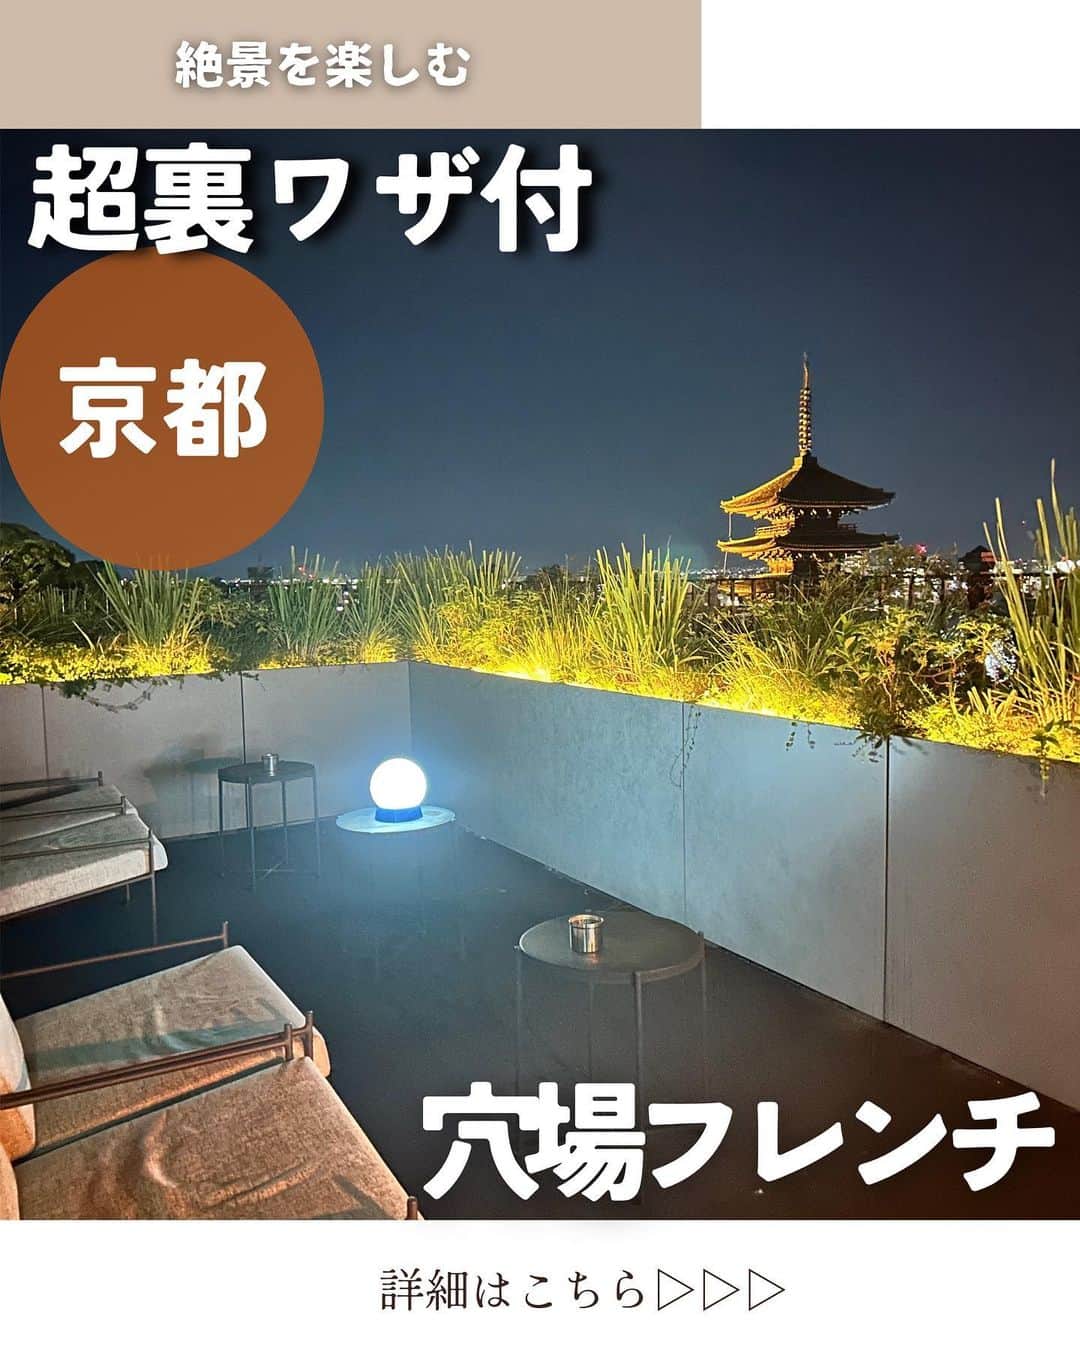 じゅみのインスタグラム：「裏技付👑コスパ最高のホテルフレンチ🍽️ ⁡ 気になったら保存してね･ᴗ･ 他のグルメはここから❯❯❯❯ @jumy_as ⁡ ✎*┈┈┈┈┈┈┈┈┈┈┈ 京都の観光地のど真ん中⛩️ 祇園四条から八坂さんあたりを散歩しつつ 向かったこちら💁‍♀️ ⁡ 【BENOIT Kyoto】 ⁡ ホテル青龍の1階にある 絶景のフレンチレストラン🍽️ ⁡ ディナーがなんと 7,500円〜と ⁡ ホテルの、しかもフレンチでは 驚きの低価格🫢 ⁡ でもほんっとに本格的で美味しかった🤤 ⁡ 𓂃MENU𓂃 🍽️前菜→6種類からチョイス ⁡ 私は 軽い燻製サーモンのタルタル  柿とゴールドキャビア(＋1,100円) を選んだよ✨ ⁡ 🍽️メイン→6種類からチョイス ⁡ 私は ブノワ風カスレ を選んだよ✨ ⁡ 🍽️デザート→ 6種類からチョイス ⁡ 私はクープ・グラッセ を選んだよ✨ ⁡ ⁡ 前菜・メイン・デザート・食後の飲み物 7,500円 ⁡ 前菜2品・メイン・デザート・食後の飲み物 9,000円 ⁡ 前菜・メイン2品・デザート・食後の飲み物 11,000円 ⁡ 選ぶメニューによっては 追加料金あり💰 ⁡ ⁡ ✎*┈┈┈┈┈┈┈┈┈┈┈ そして驚きなのが 予約するだけでも25,000円かかる (最低利用料金設定プラン) ⁡ ホテル青龍のルーフトップバー 「K36」を ⁡ ブノワ京都でお食事したら 利用できる👀💕 ⁡ 予約困難な超人気店を楽しむ まさに超裏技‼️ ⁡ ⚠️K36さんの予約はブノワ京都さんの予約の際に詳細確認してね📝 ⁡ ──────────────  ⁡ 〜店舗情報〜 【BENOIT Kyoto】 📍 京都府京都市東山区清水2-204-2 The Hotel Seiryu Kyoto Kiyomizu 🚃  清水五条徒歩20分 私は祇園四条から散歩しながら向かいました🚶 食べログ: ⭐️3.51 ⏰ Lunch  11:30～15:30 (14:30 LO) Dinner 17:30～22:00(20:30 LO) ※上記食べログ情報です🙋‍♀️ ⁡ ﹏﹏﹏﹏﹏﹏﹏﹏ ⁡ 最後まで見てくださりありがとうございます！ ⁡ 気に入ってもらえたら、　 いいね👍コメント📝保存📍 励みになります🙇‍♀️ ⁡ ﹏﹏﹏﹏﹏﹏﹏﹏ ⁡#PR #京都グルメ #祇園四条ランチ #祇園四条グルメ #祇園四条ディナー #京都ランチ #五条 #ブノワ京都 #ホテル青龍 #K36 #京都デート #京都ディナー #京都記念日デート #kyotogourmet #kyotorestaurant」